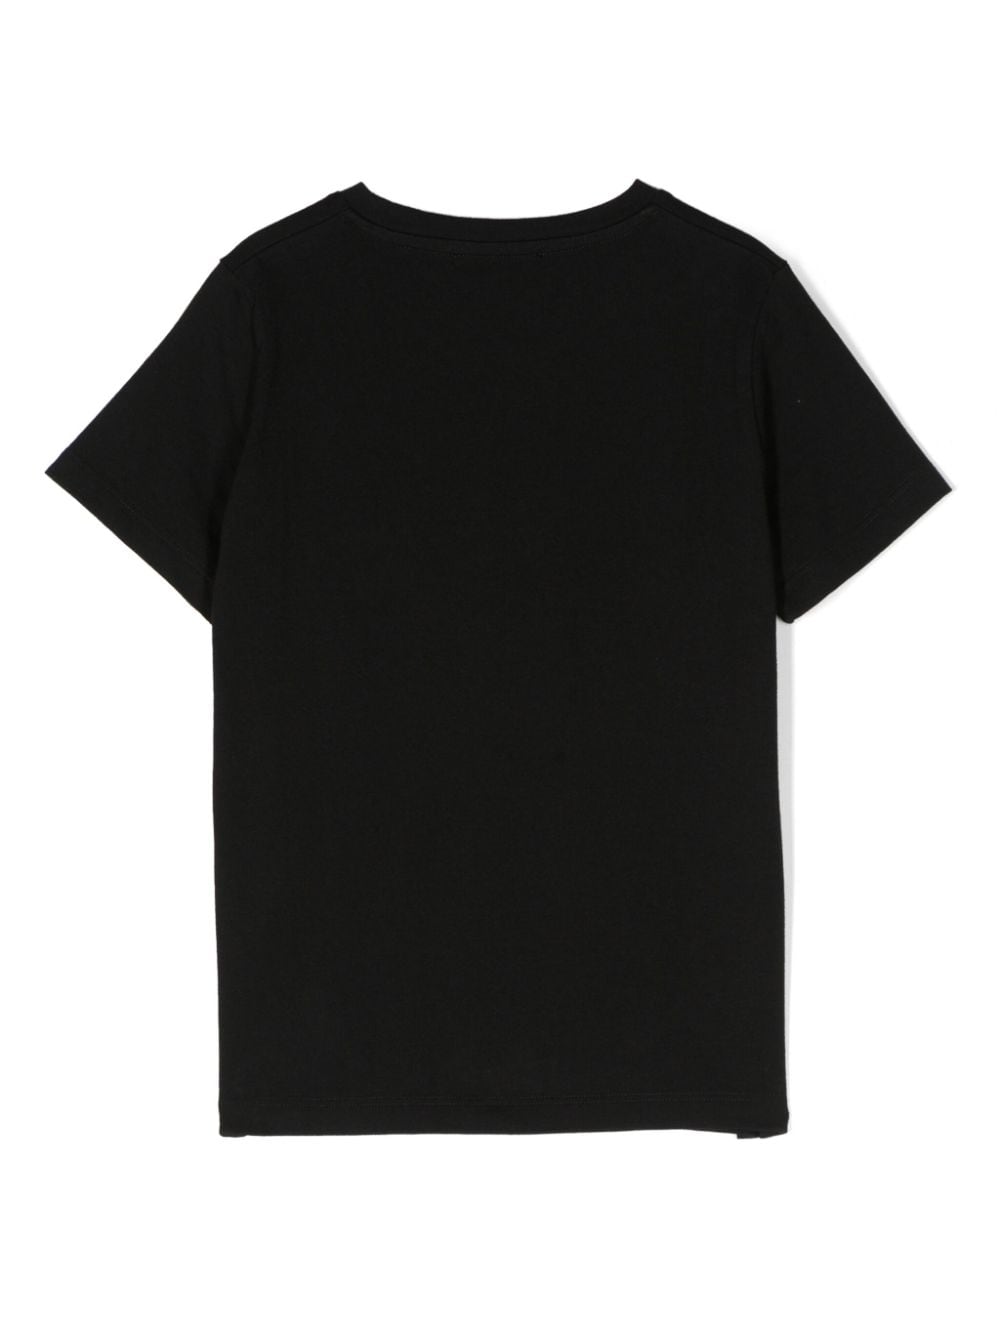 T-shirt unisexe noir avec imprimé